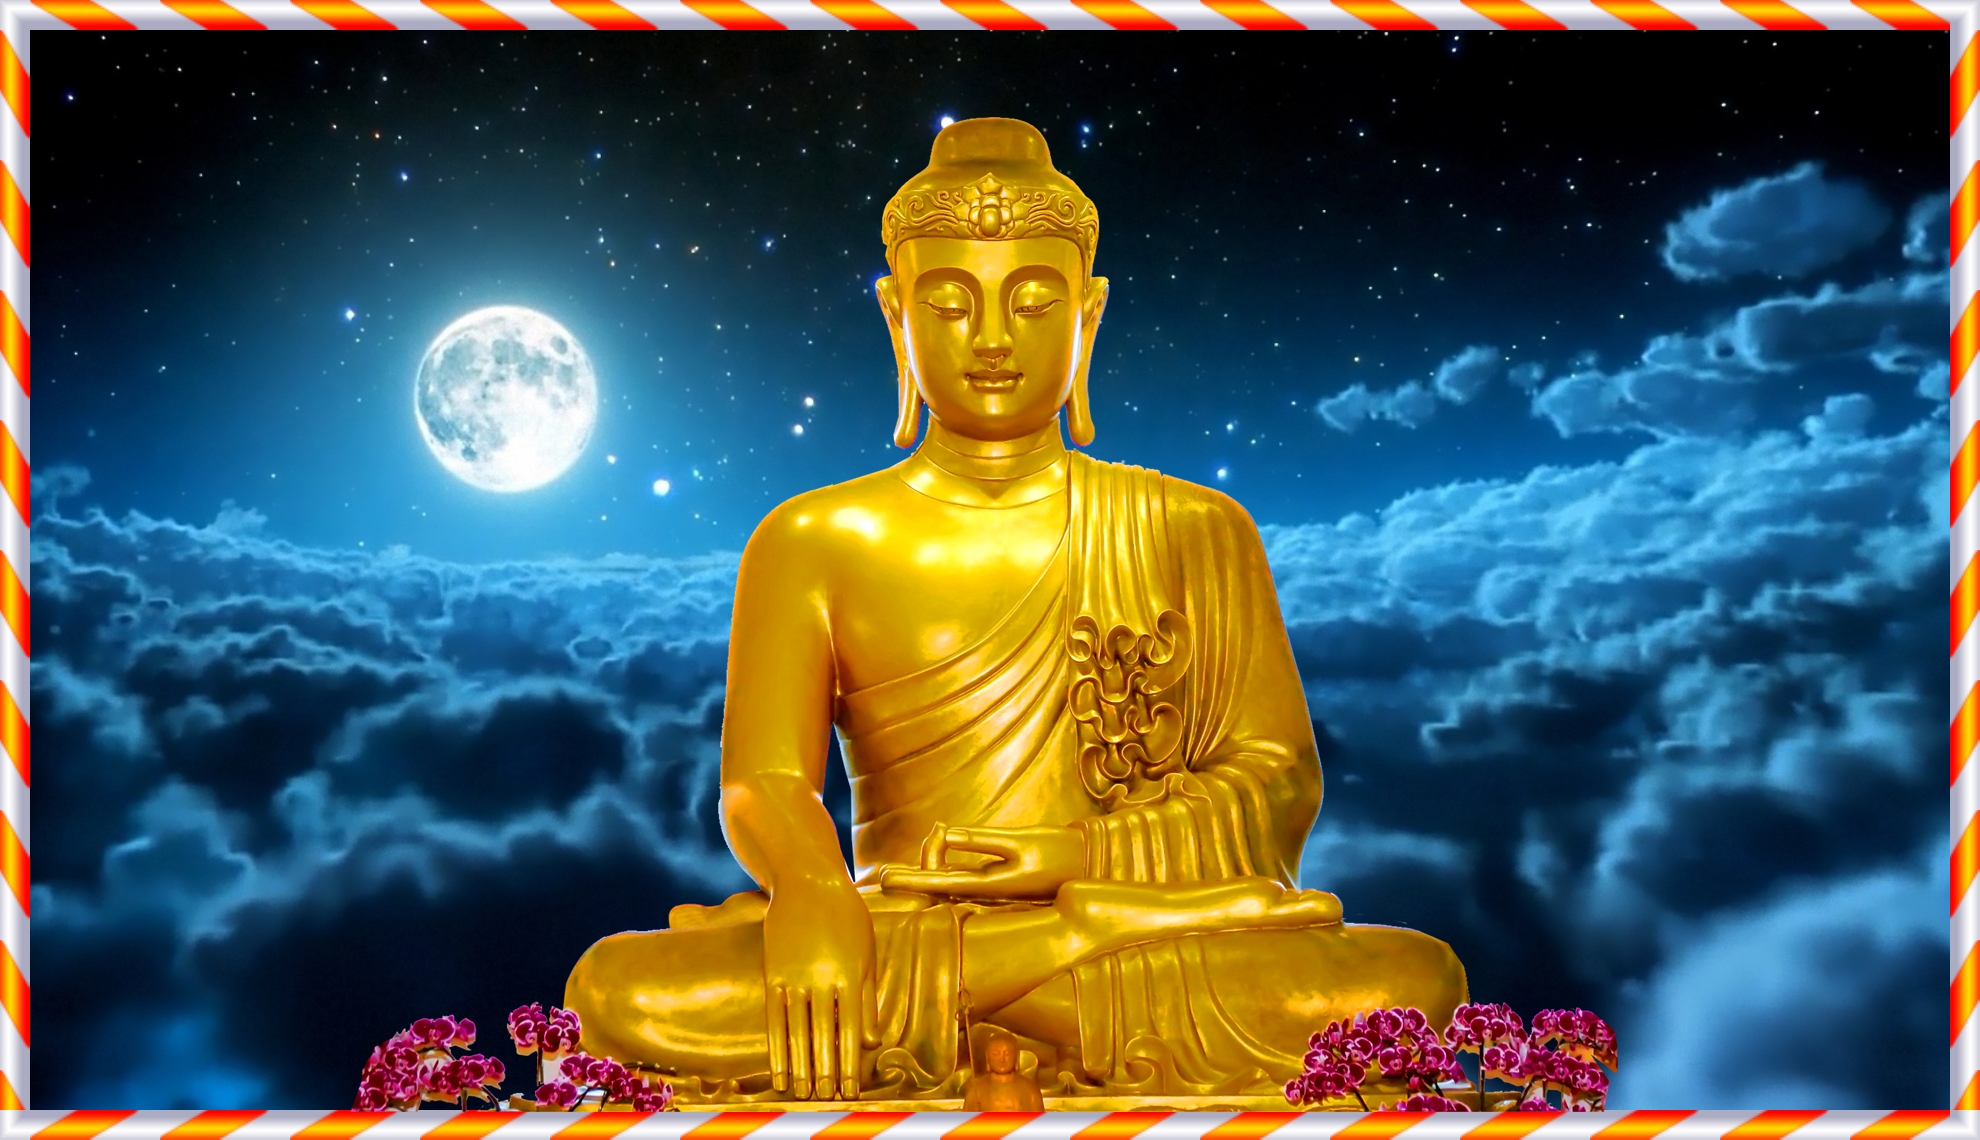 Hình Phật Thích Ca là biểu tượng trân quý của đạo Phật, mang lại tình cảm yêu mến và cảm nhận về sự thanh tịnh và giác ngộ. Hãy đến với hình ảnh này để tìm kiếm một chút bình an cho tâm hồn mình.